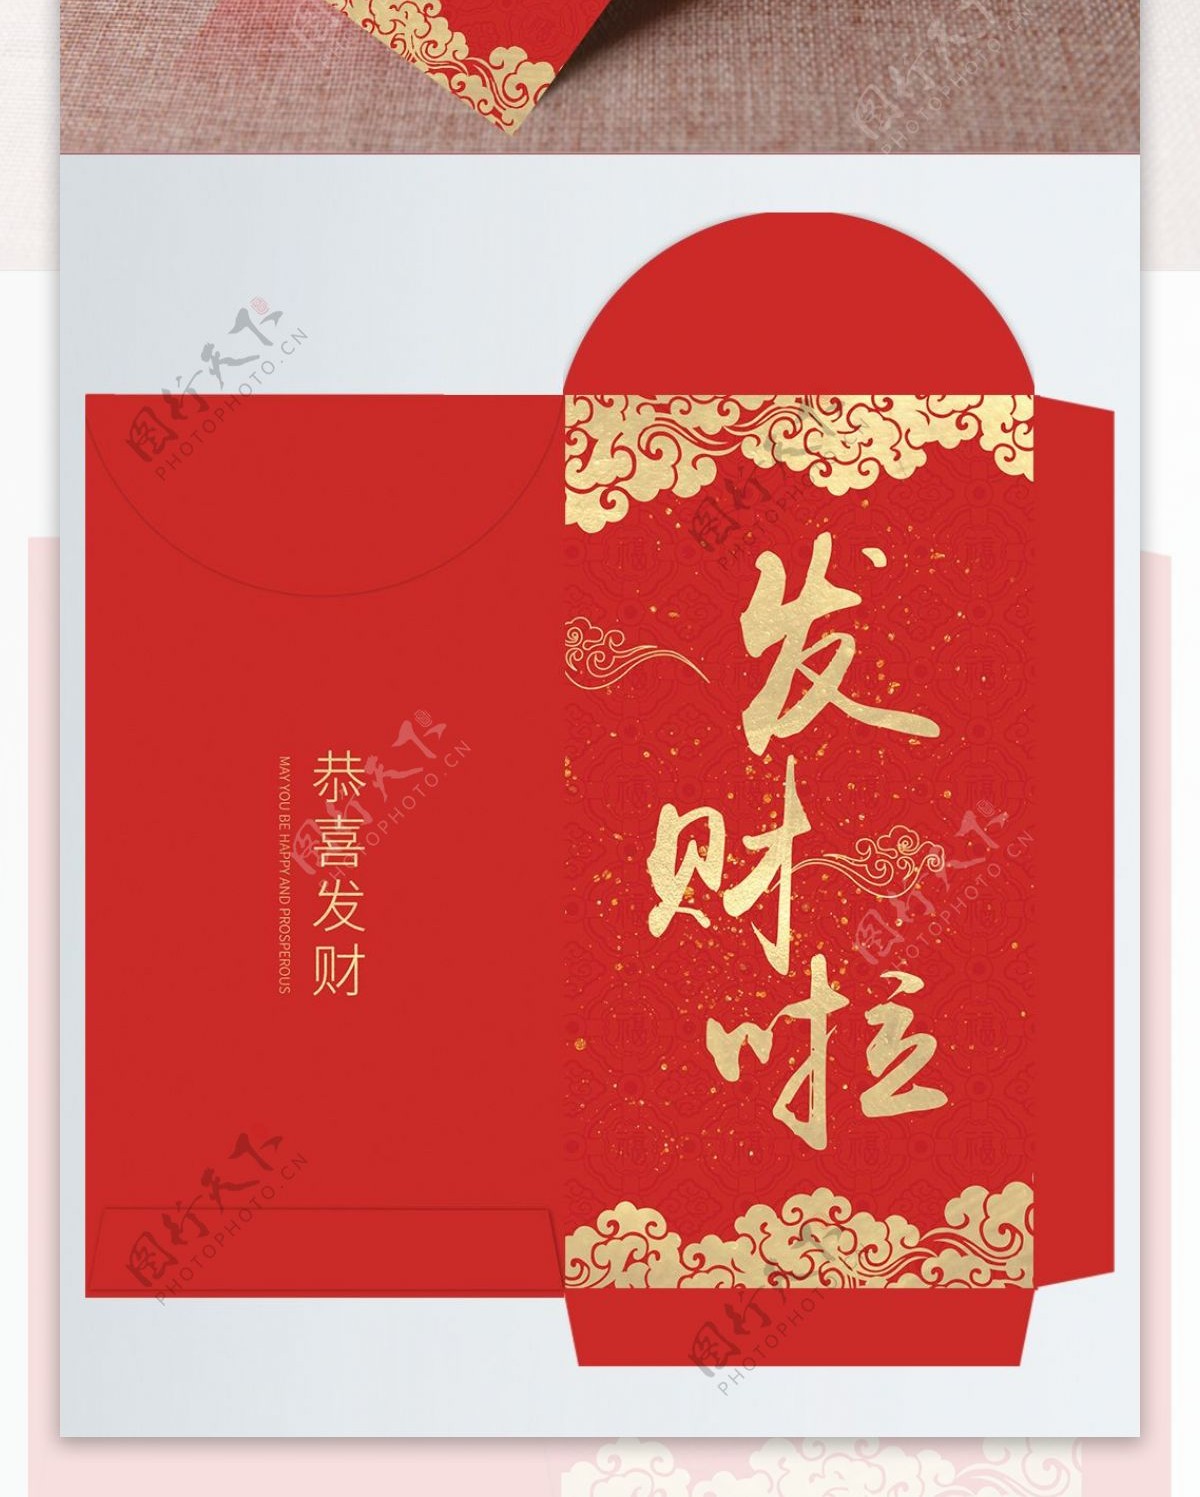 春节发财啦红包包装设计模版